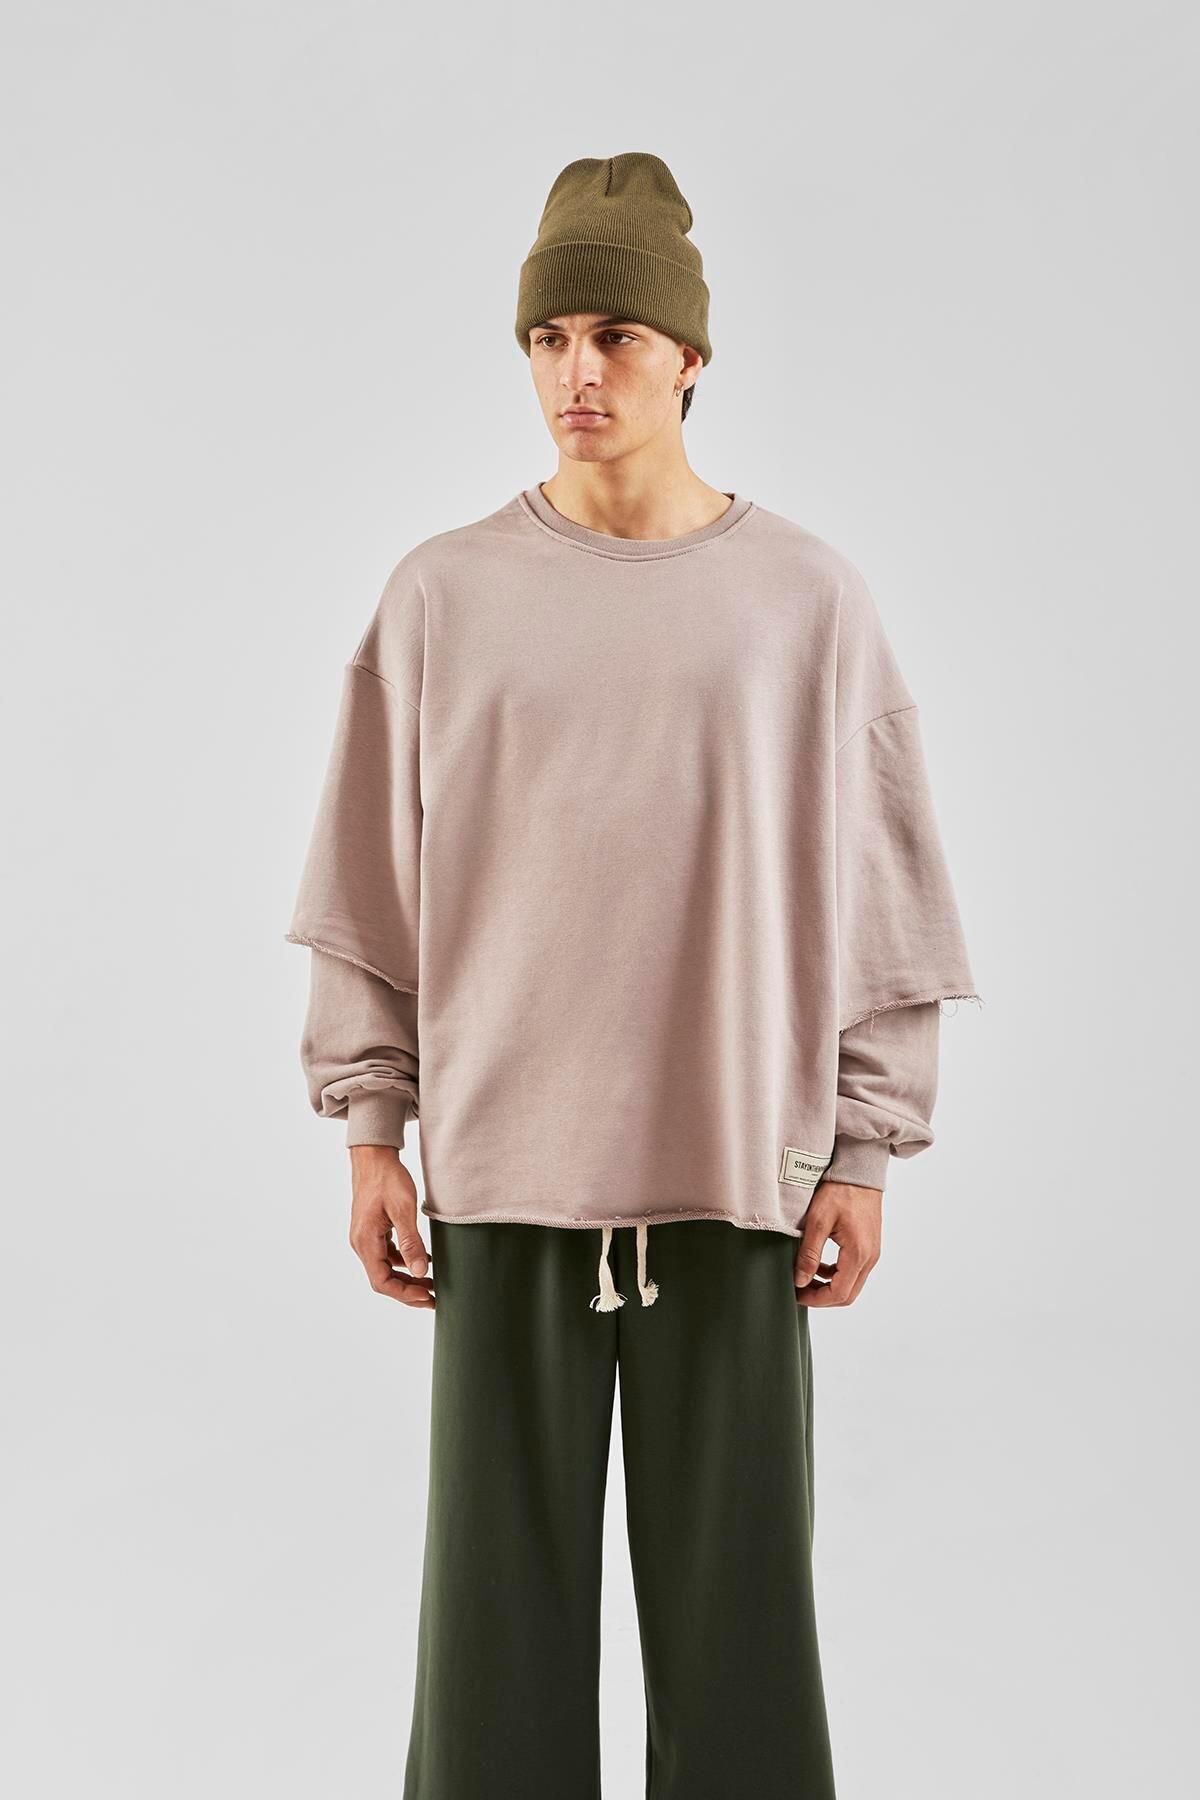 Flaw Wear Street Vizon Long Sleeve Sweatshirt